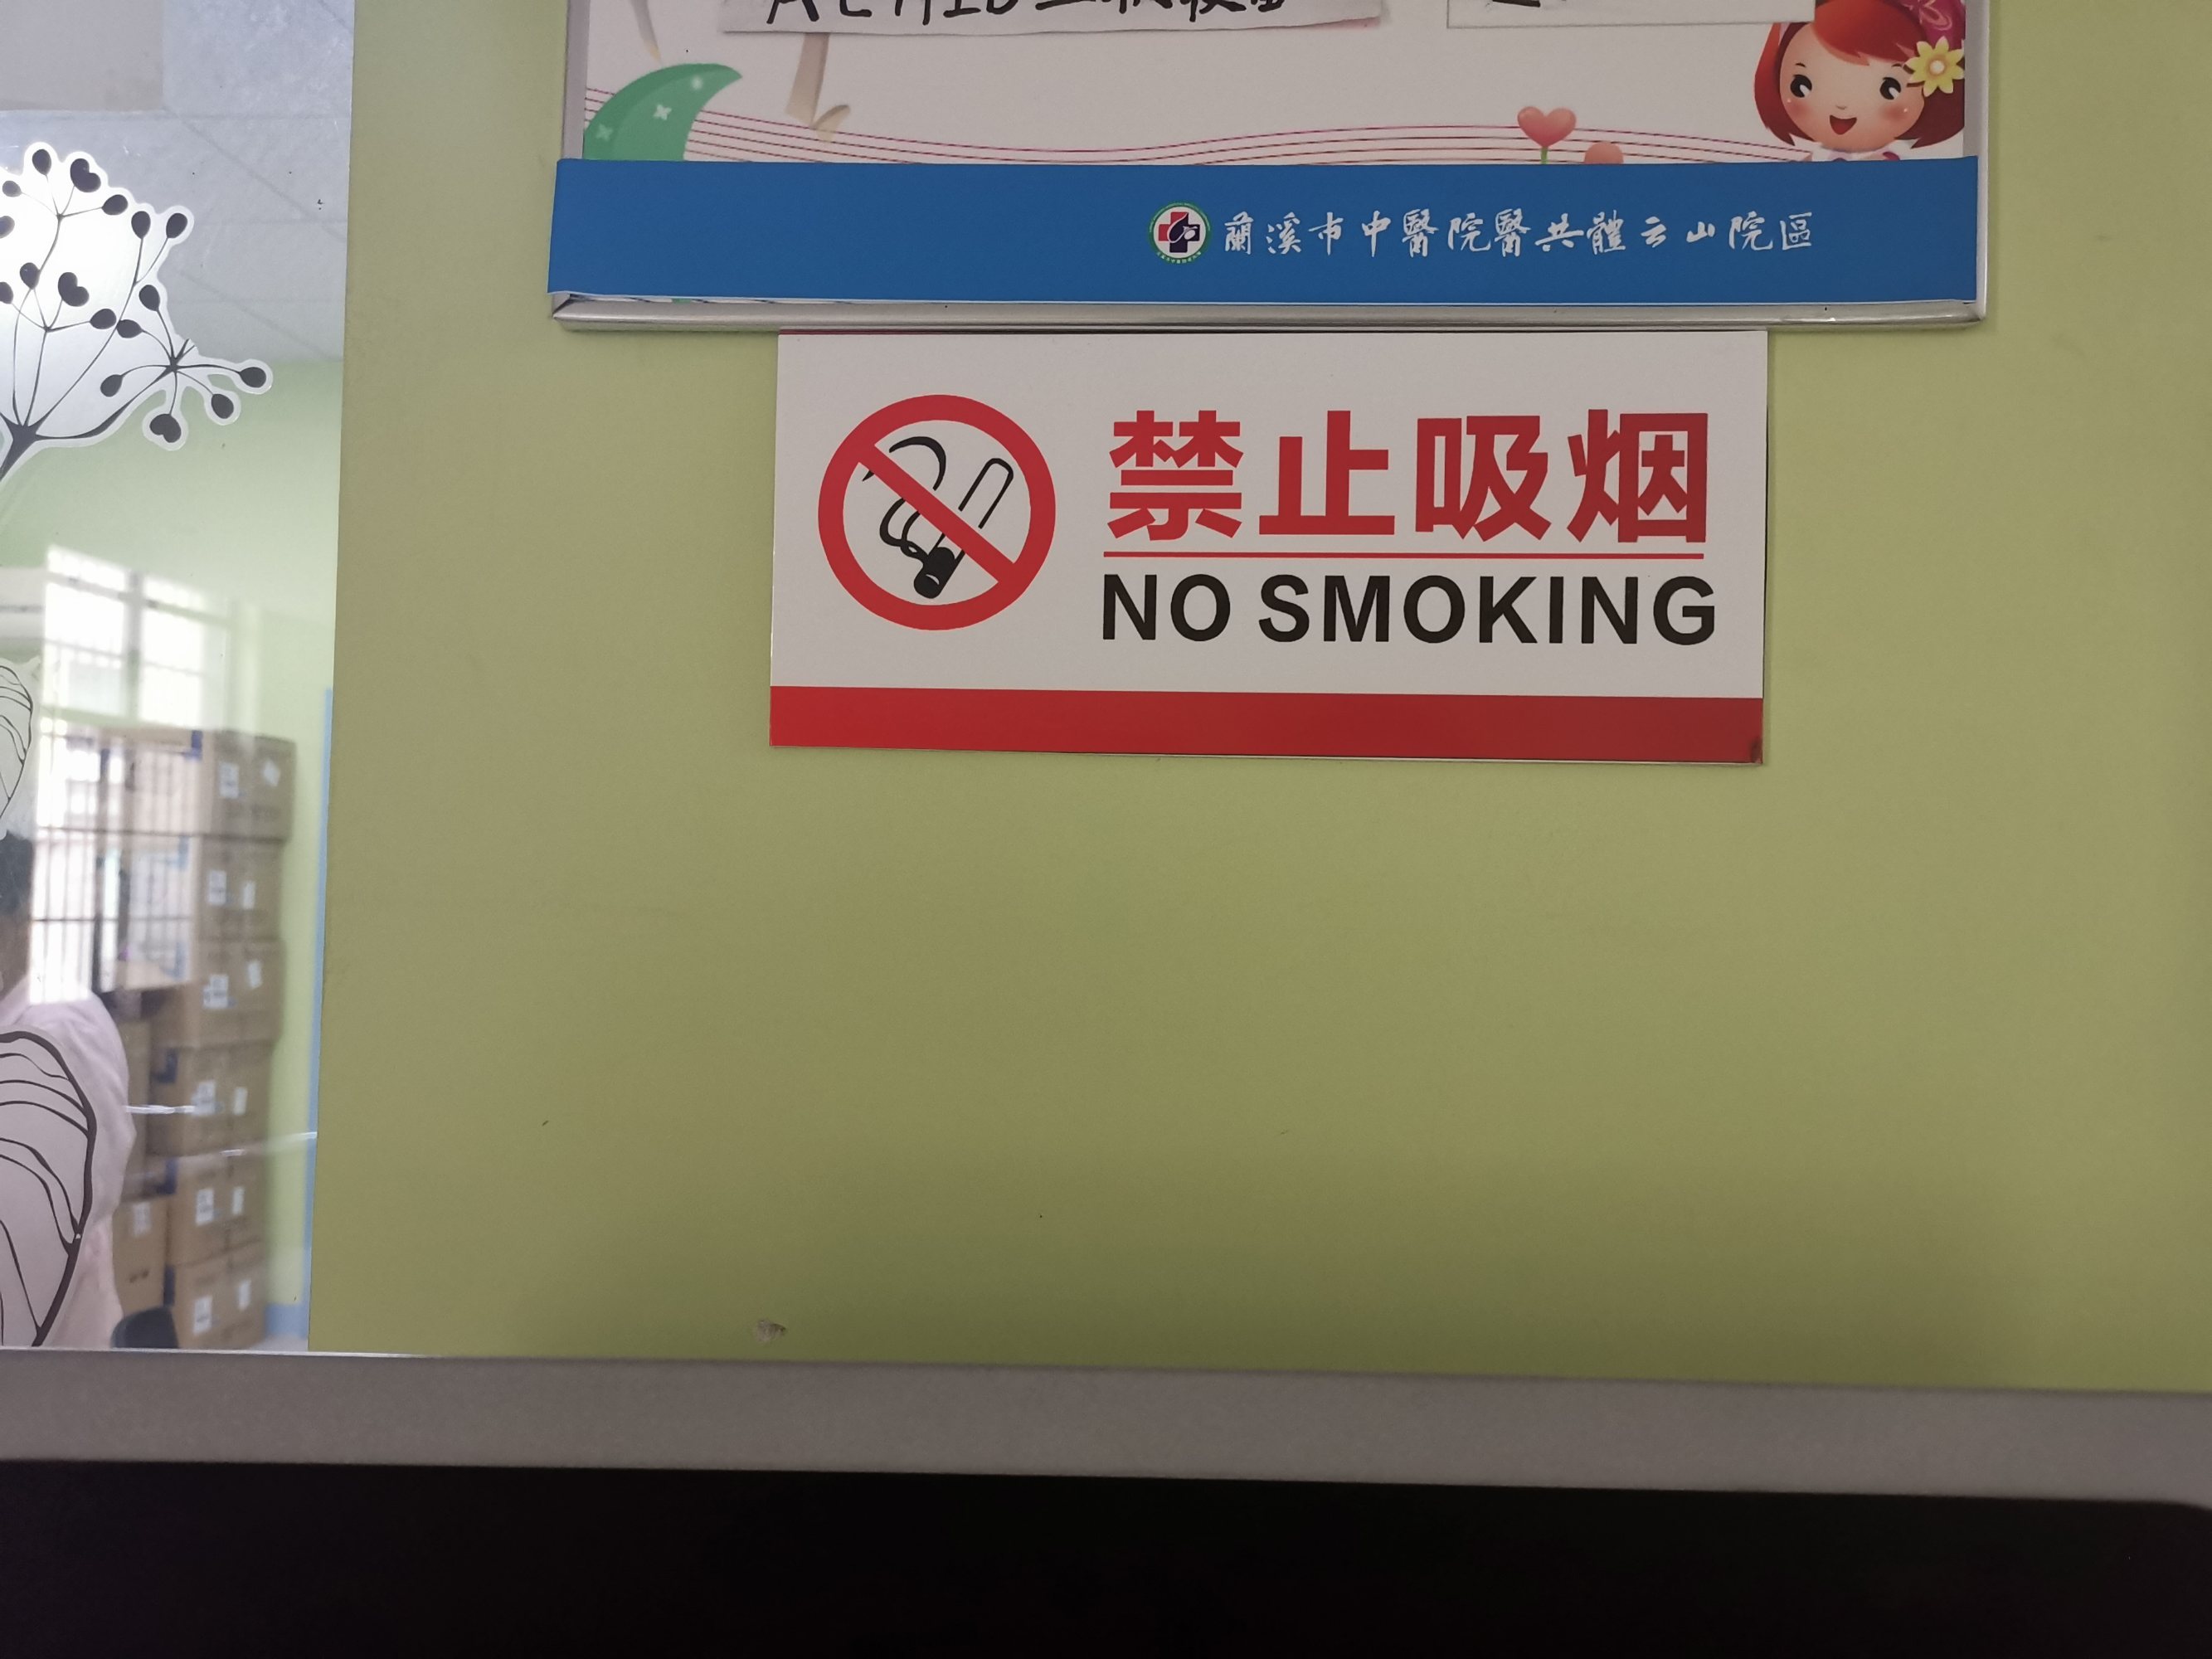 北京展出40多国烟盒警示图 烟民看一半不敢再看